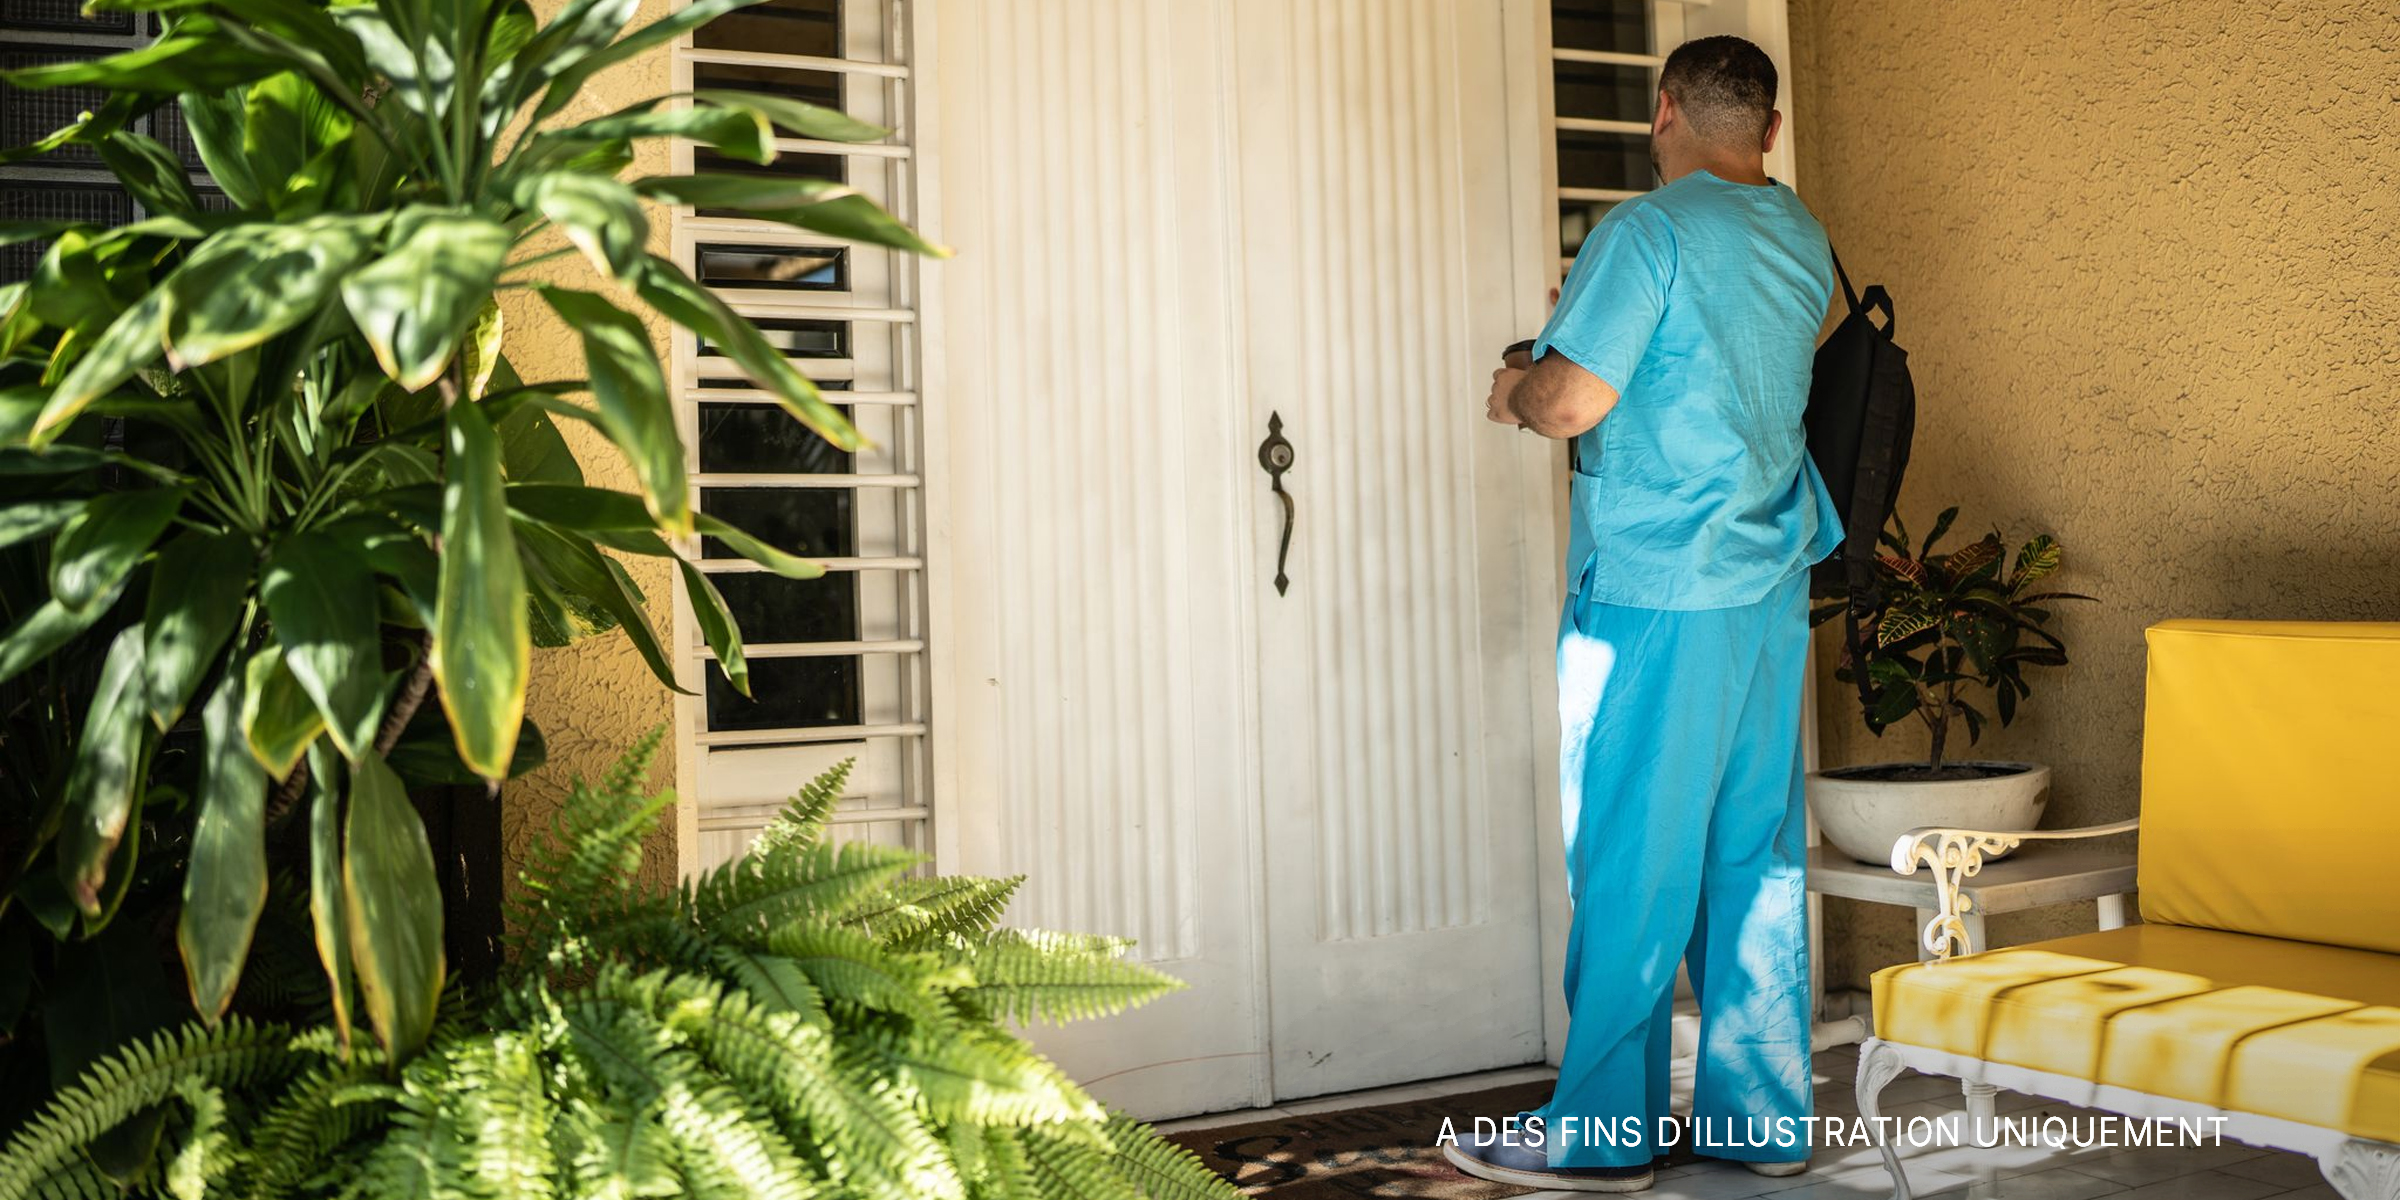 Un homme en blouse attendant à la porte d'entrée | Source : Getty Images